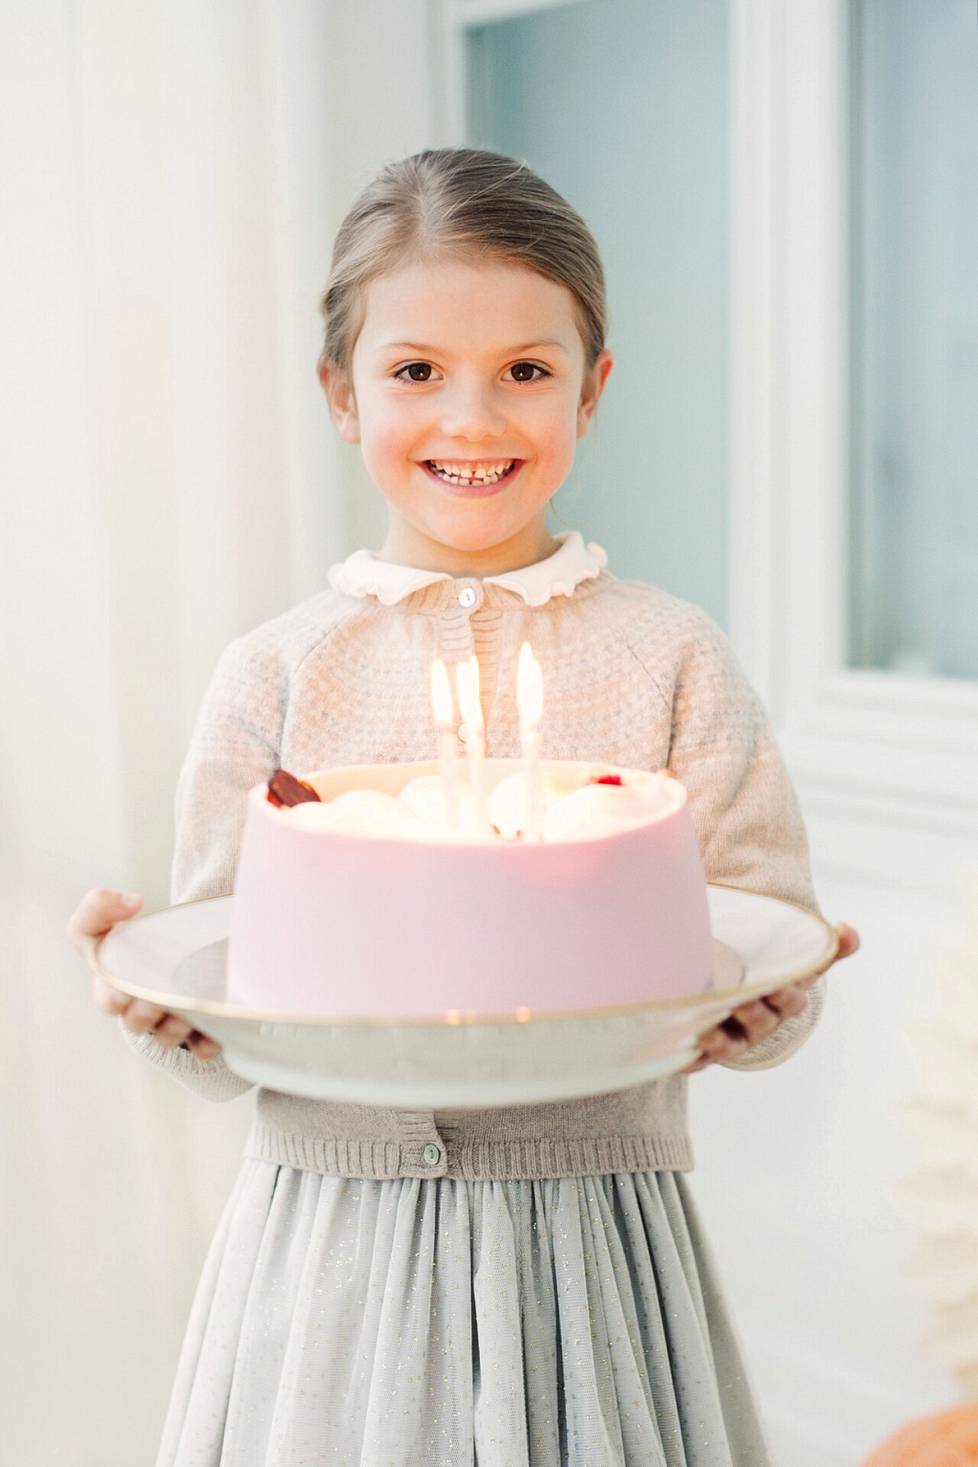 Syntymäpäiväsankari ja kuuden kynttilän kakku vuonna 2018.